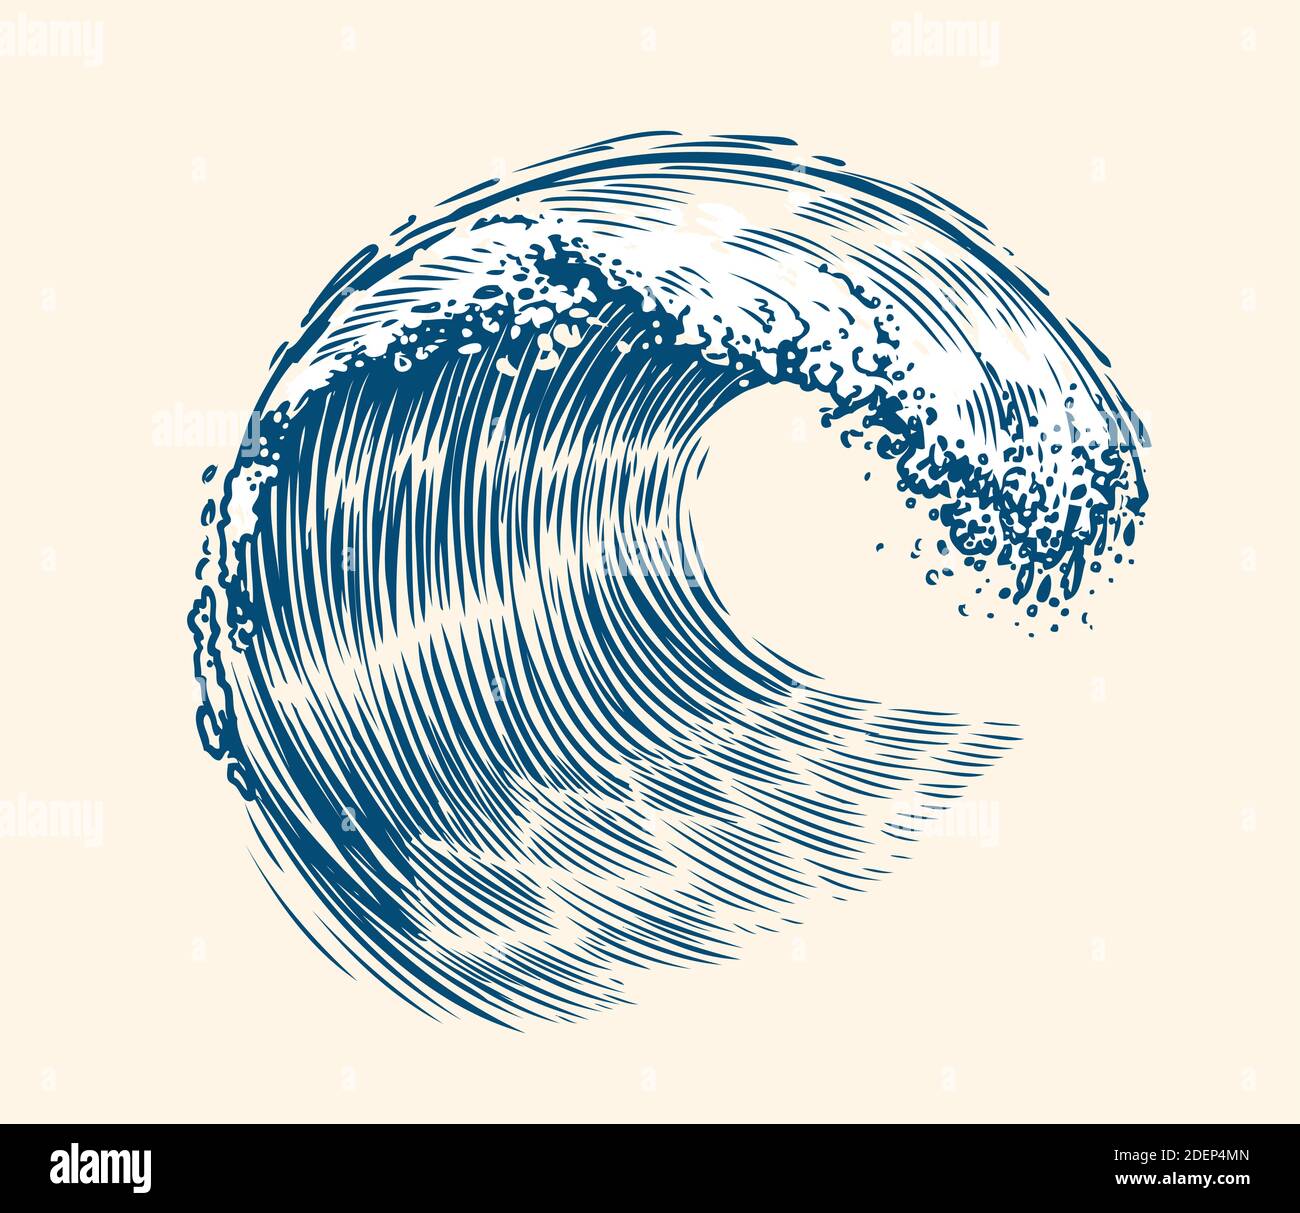 Sea wave sketch. Surfing concept vintage vector illustration Stock Vector